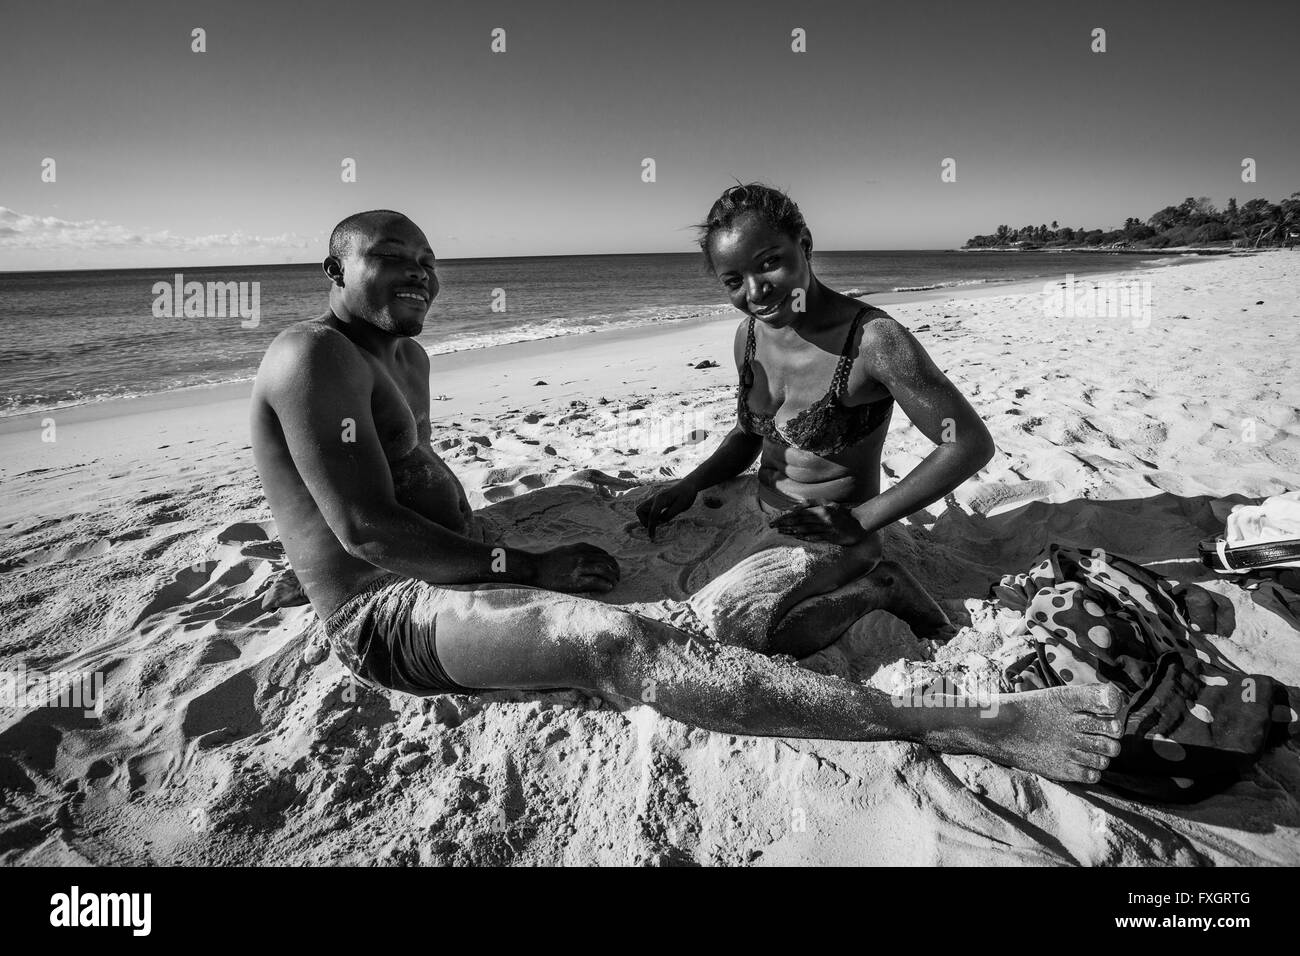 Le Mozambique, l'homme et la femme sur la plage, sable blanc, noir et blanc, B&W. Banque D'Images